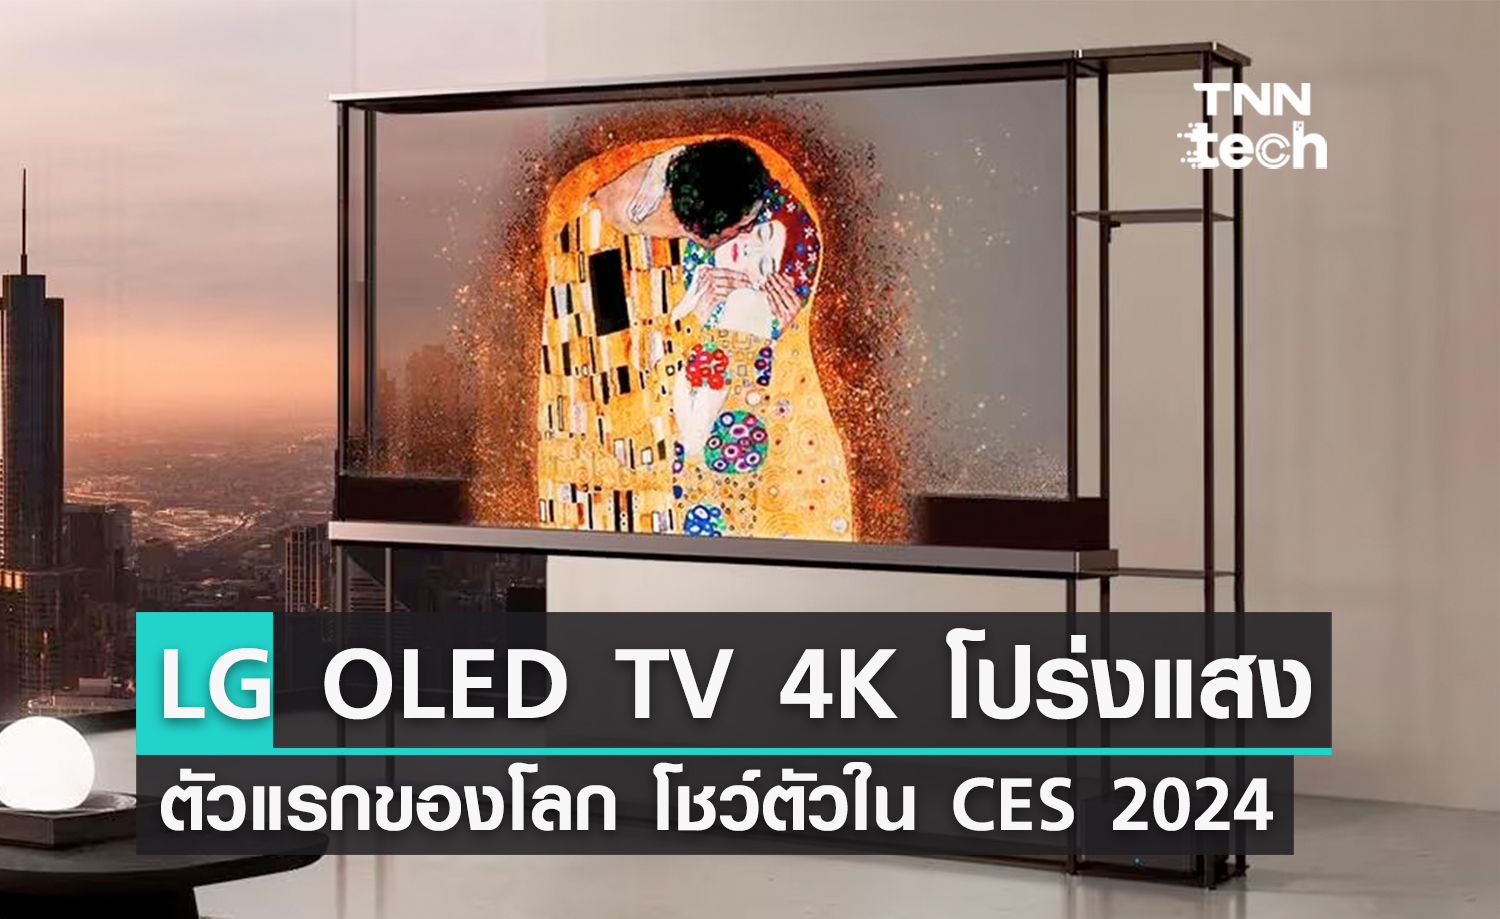 นึกว่าตู้ปลา ! TV หน้าจอ 4K โปร่งแสงตัวแรกของโลกจาก LG เปิดตัวในงาน CES 2024